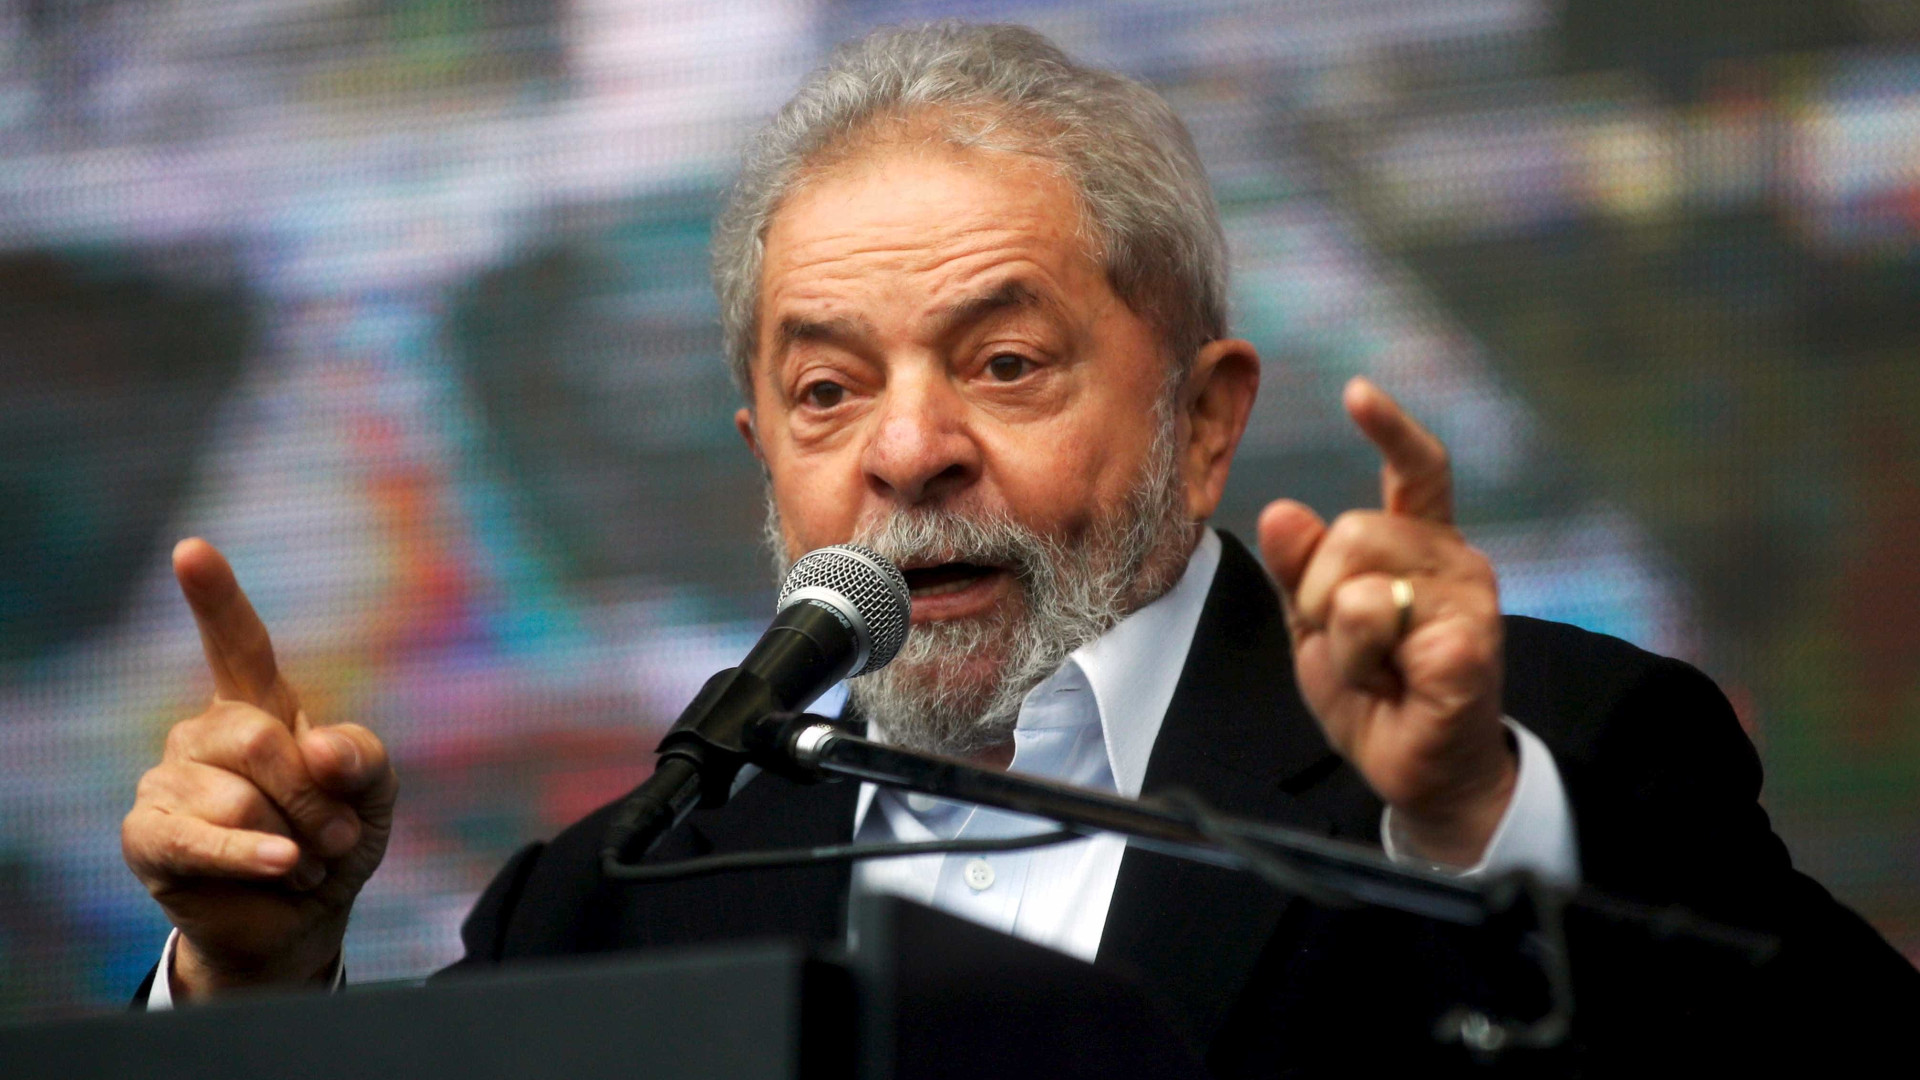 Moro derruba sigilo da Lava Jato e 
libera grampo entre Lula e Dilma